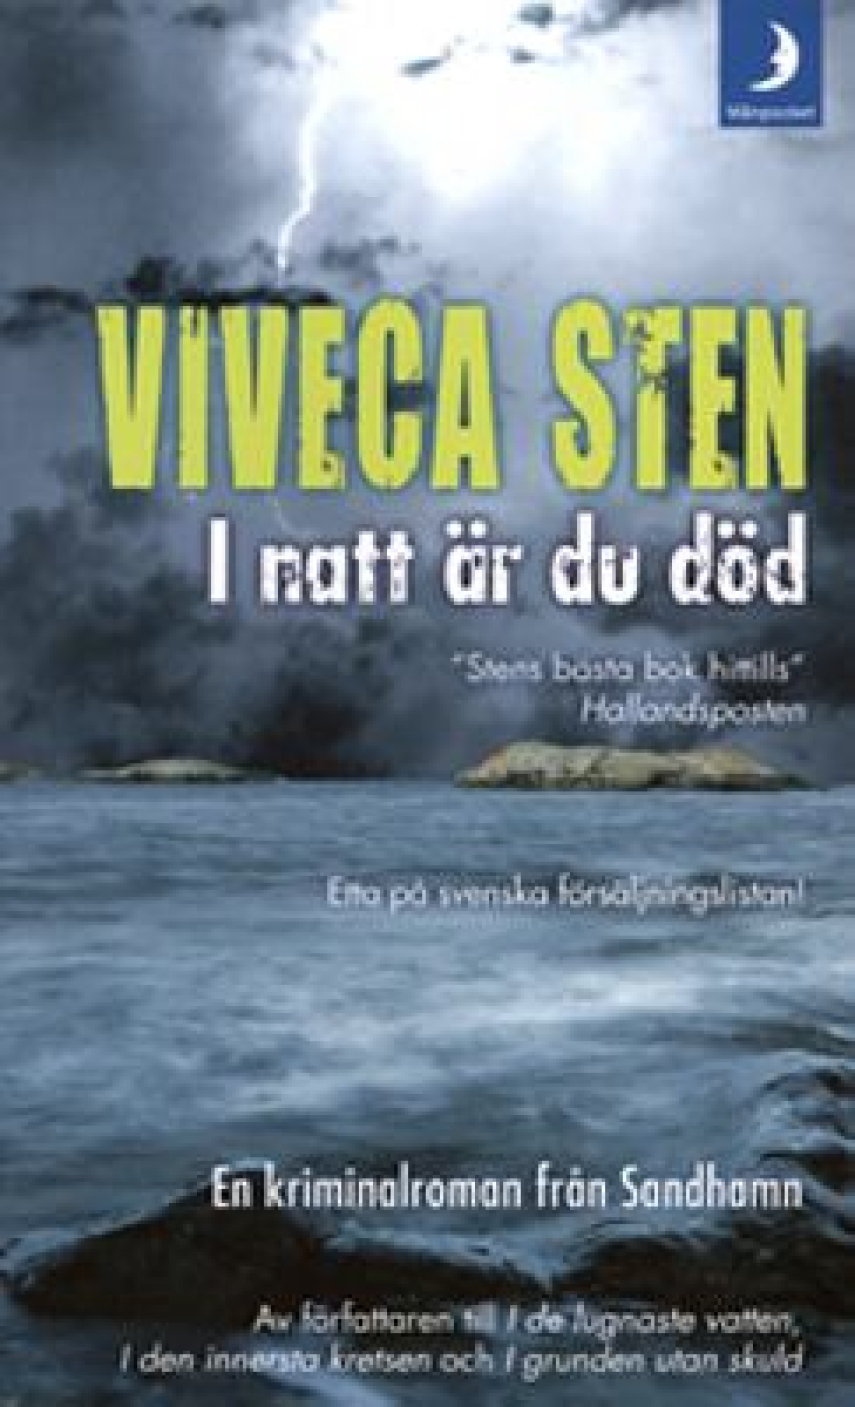 Viveca Sten: I natt är du död